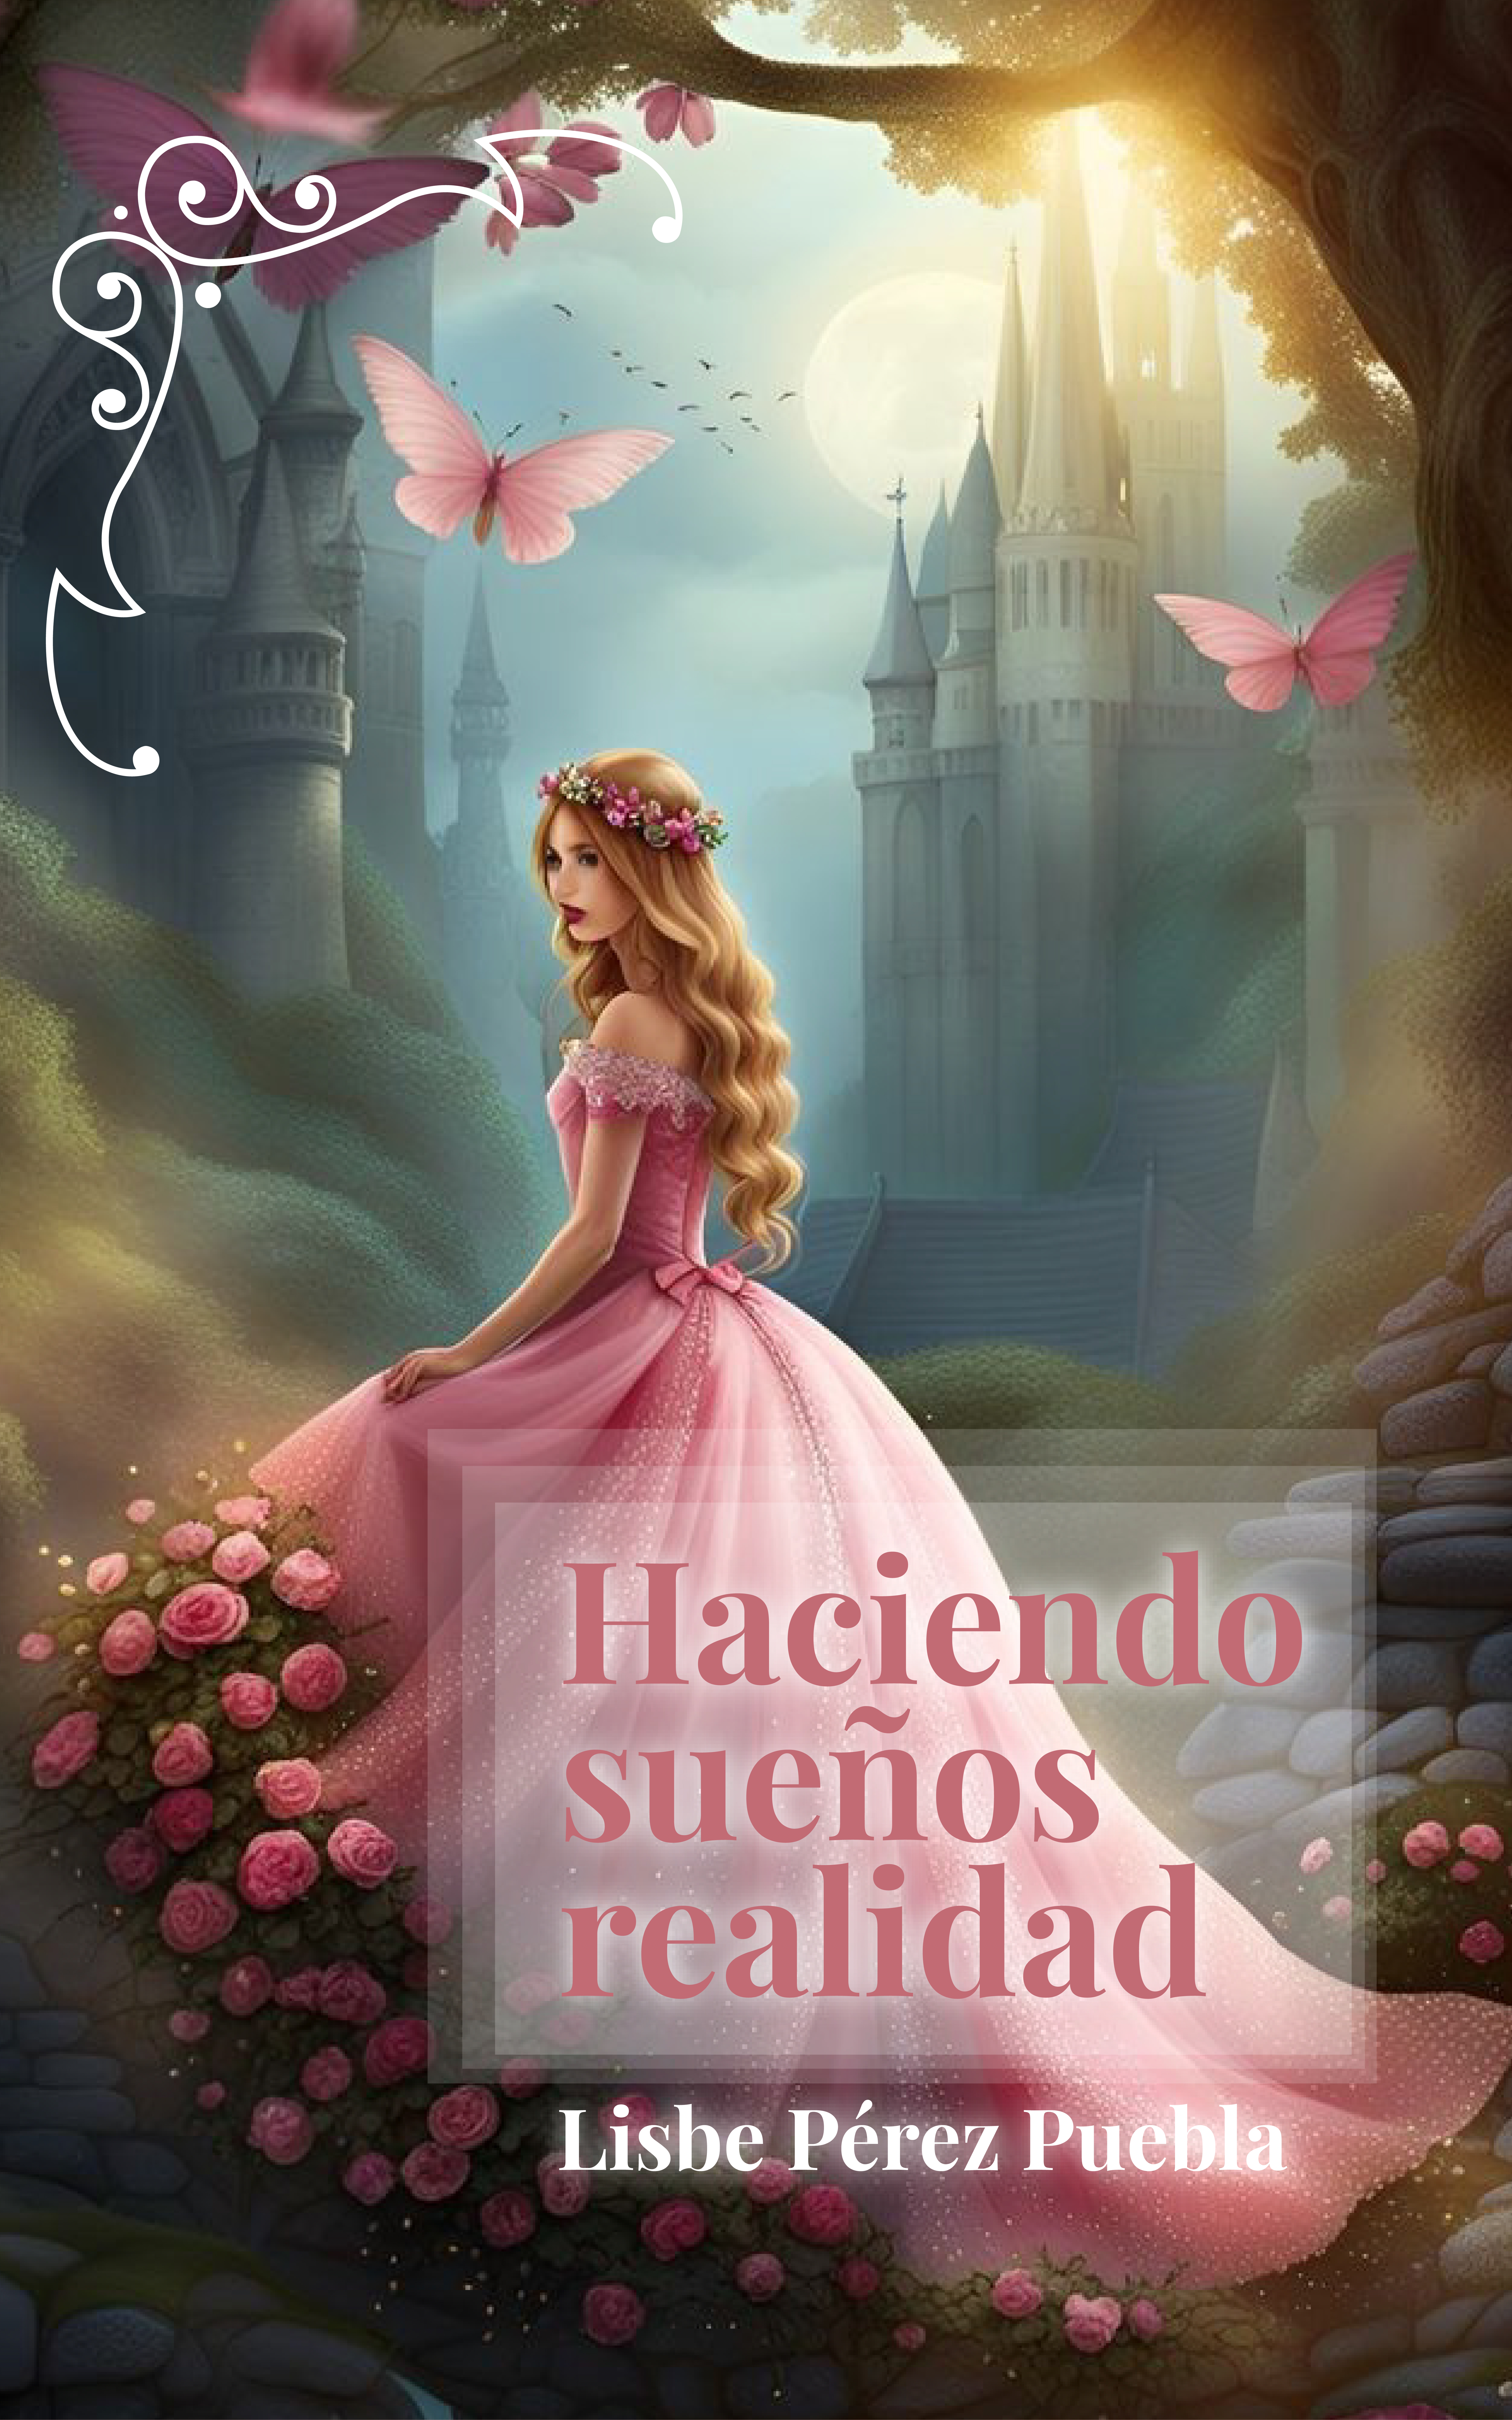 Haciendo sueños realidad, de Lisbe Pérez Puebla